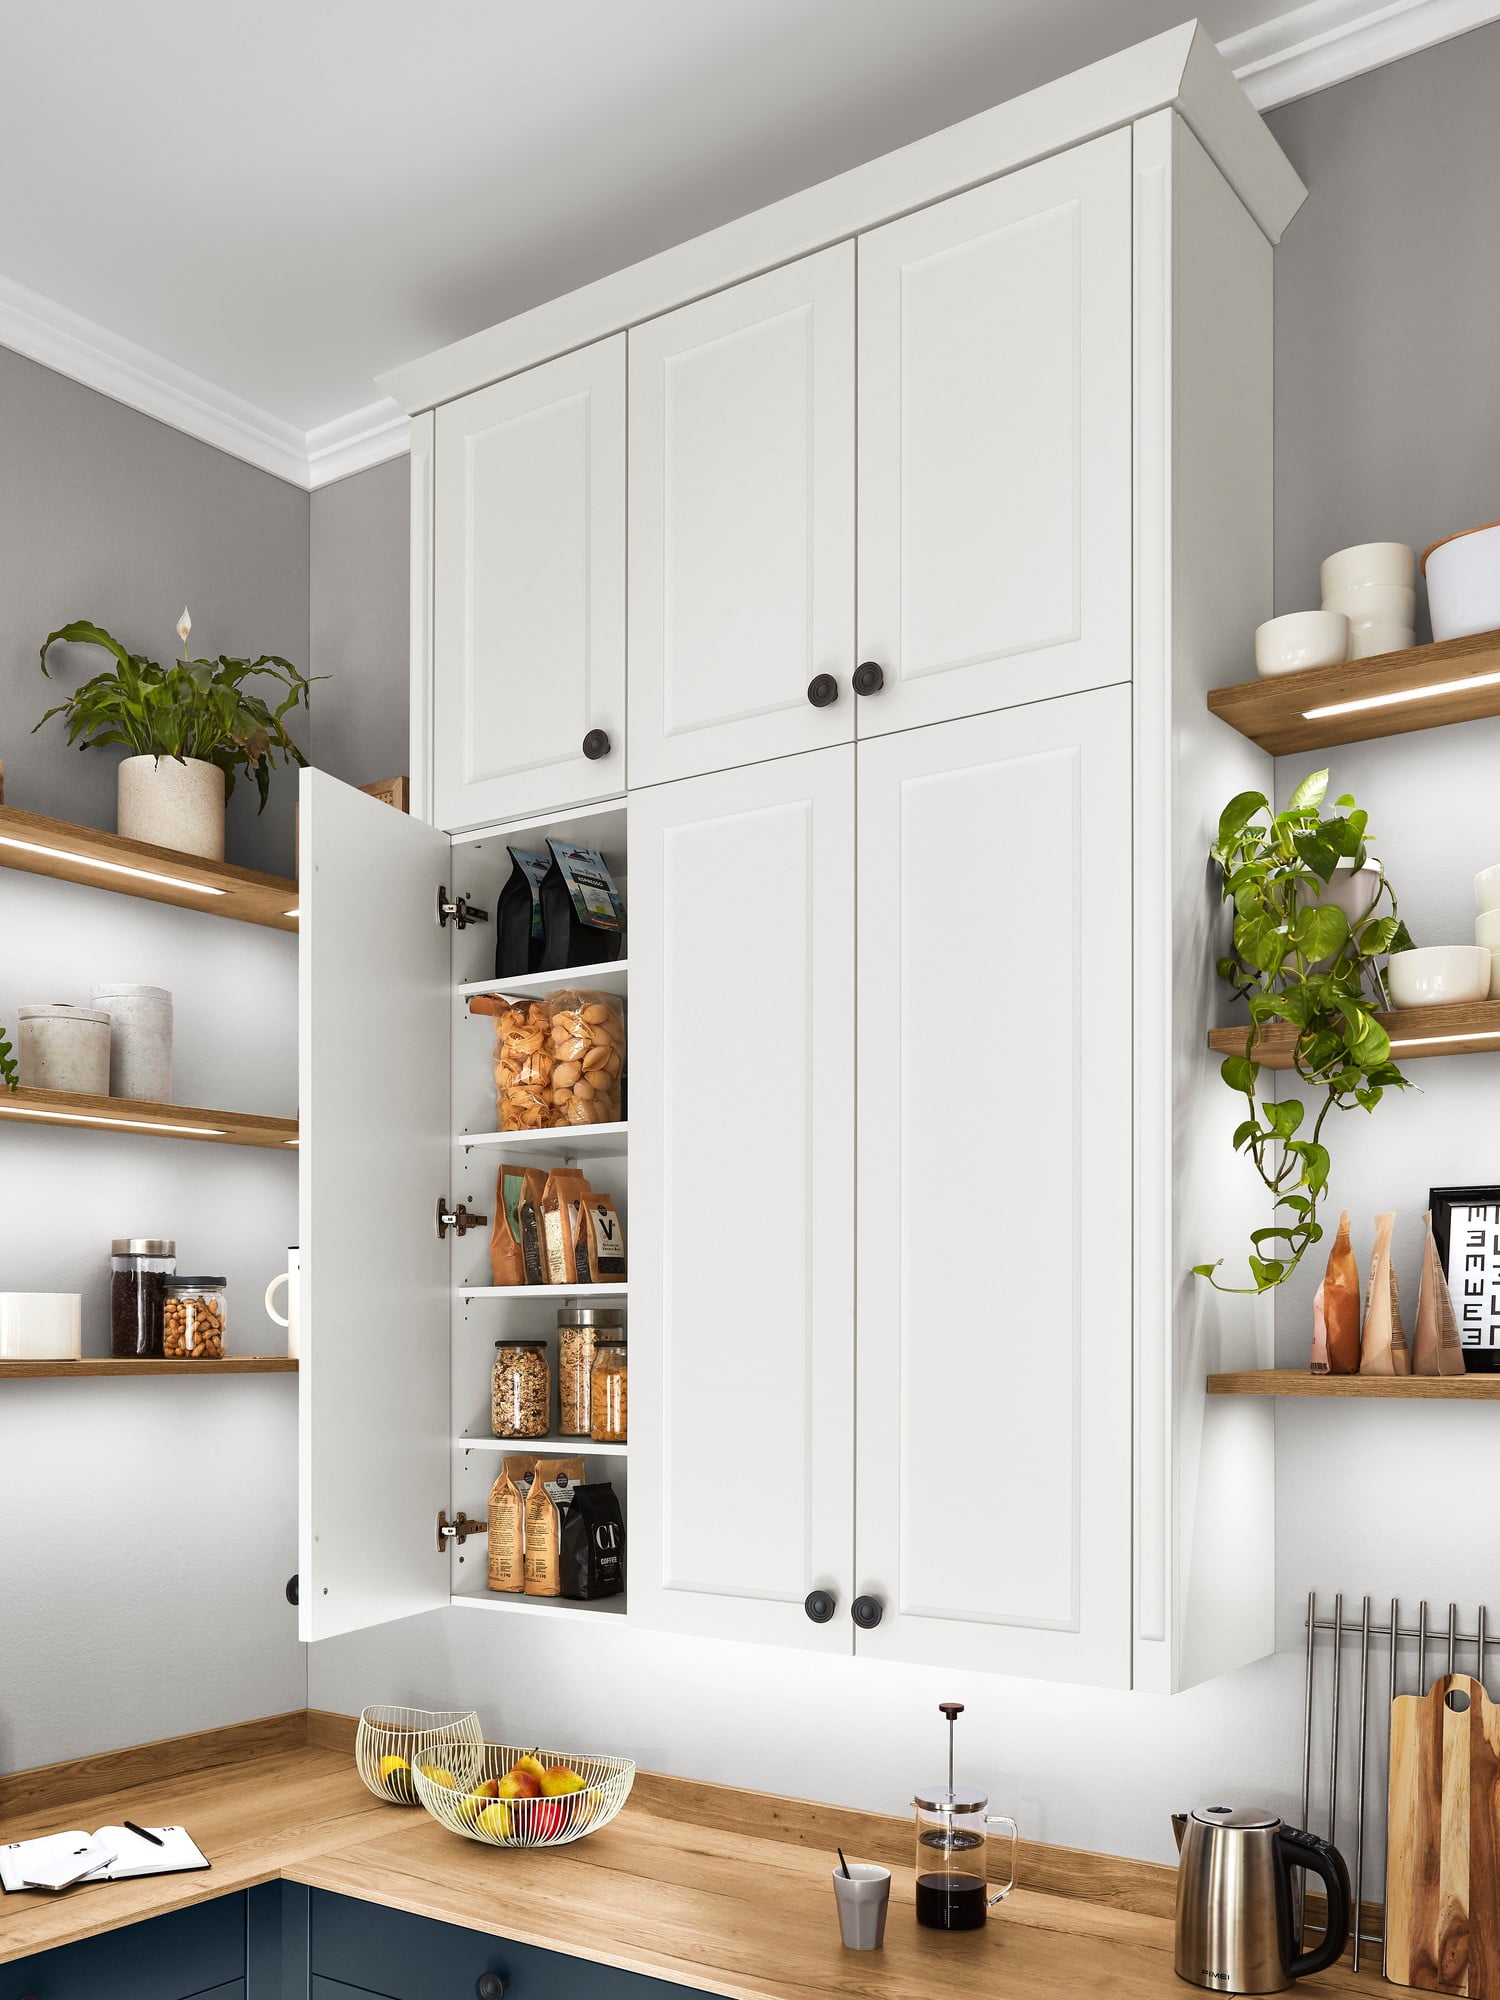 Jak v malé kuchyni získat více úložného prostoru? Skříně protáhněte až ke stropu.